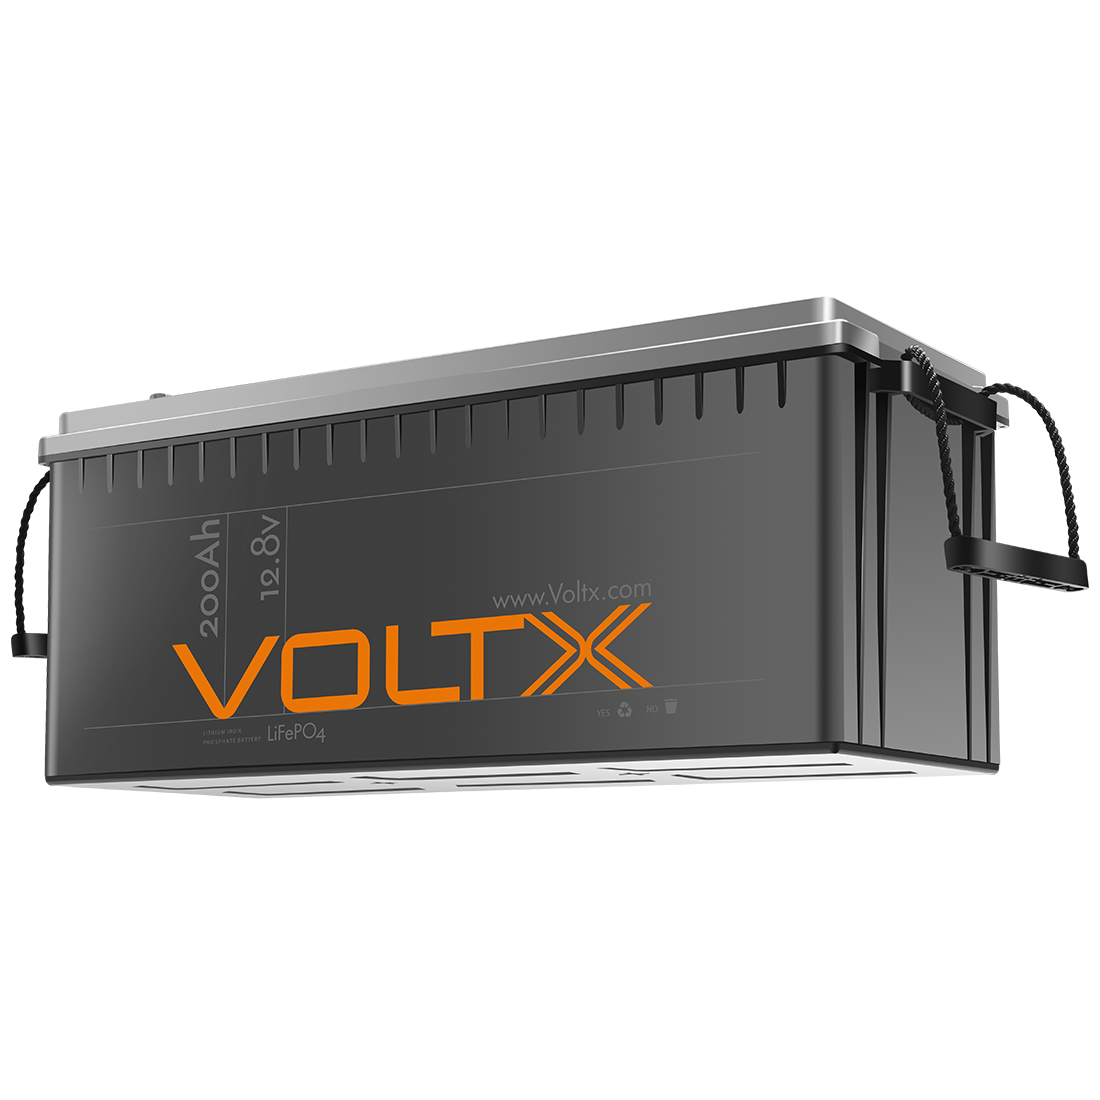 VoltX 12V 200Ah